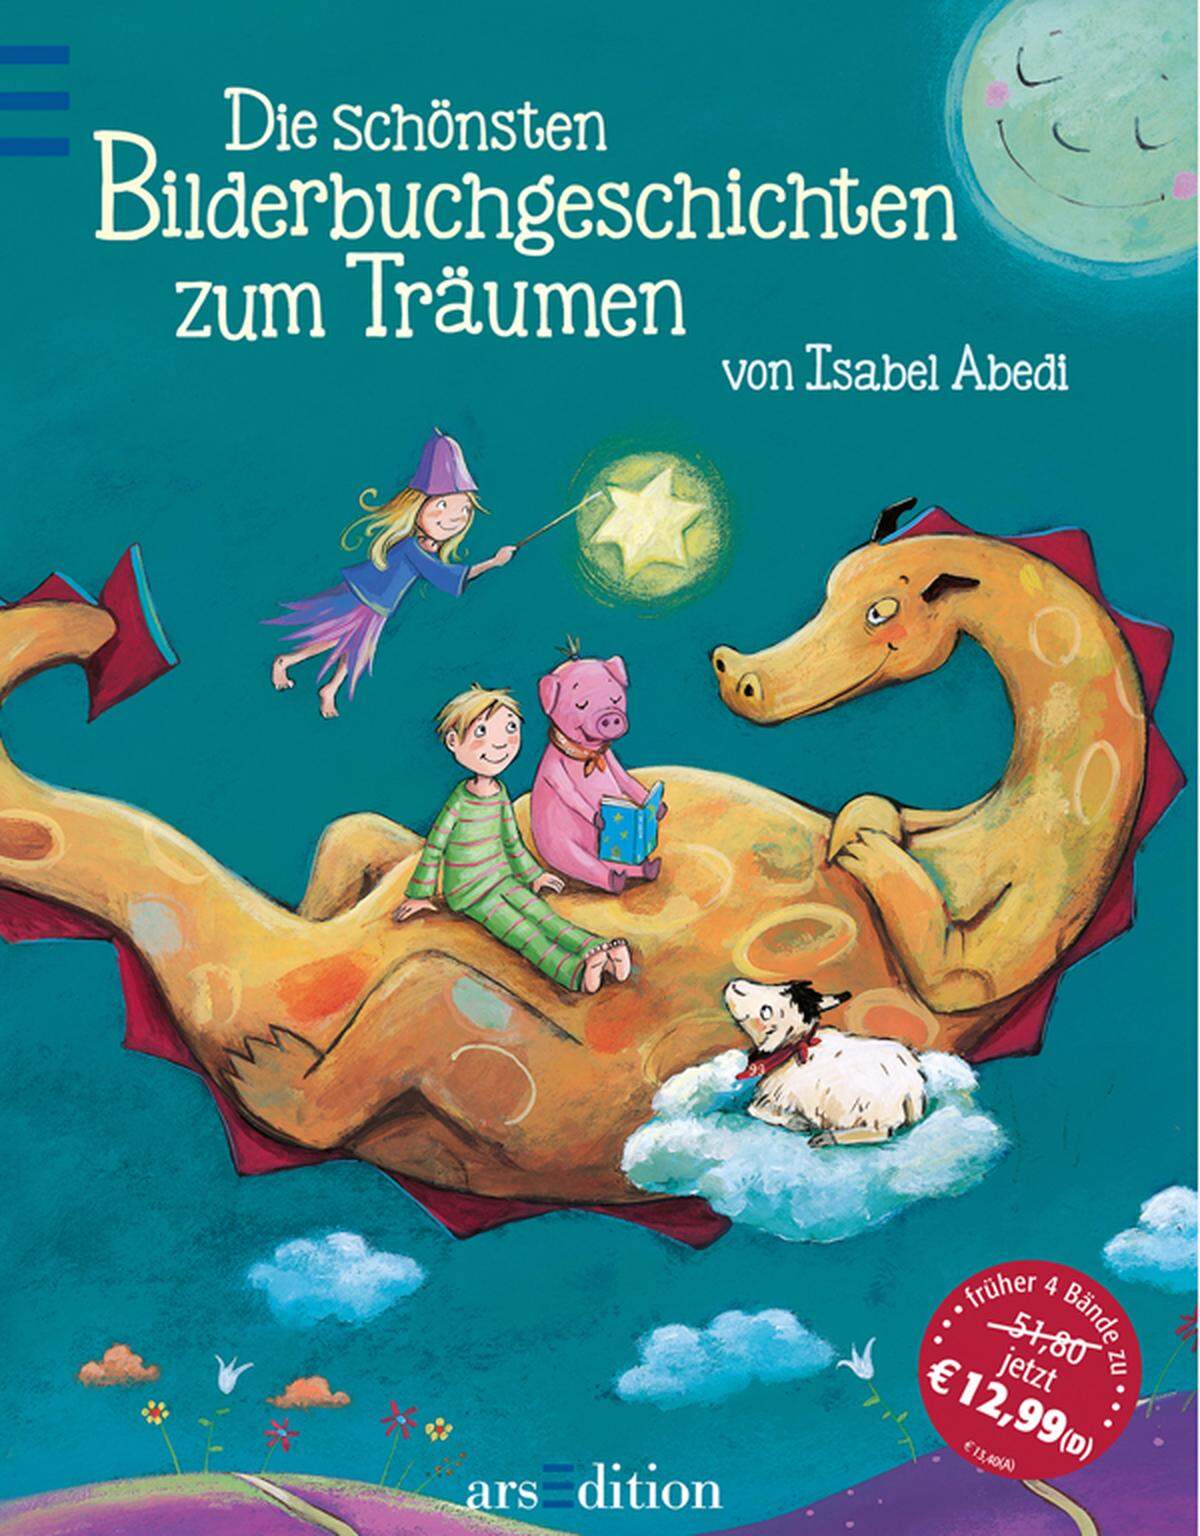 Es sind vier Bände der deutschen Kinderbuchautorin Isabel Abedi, die in einem Buch versammelt wurden - und so bietet der Sammelband einiges an Lesestoff. Von "Schlawatz, der Traumwunscherfüller" bis zu "Das 99. Schaf" kommen immer wieder die Themen Träumen und Schlafen, aber auch schlechte Laune und Mut zur Sprache. "Die schönsten Bilderbuchgeschichten zum Träumen" sind eine schöne Sammlung: Die vier Geschichten wurden von Dagmar Henze, Ana-Maria Weller und Julia Kaergel sehr kindgerecht ilustriert. Erschienen ist das Buch bei arsEdition. Alter: Ab vier Jahren    